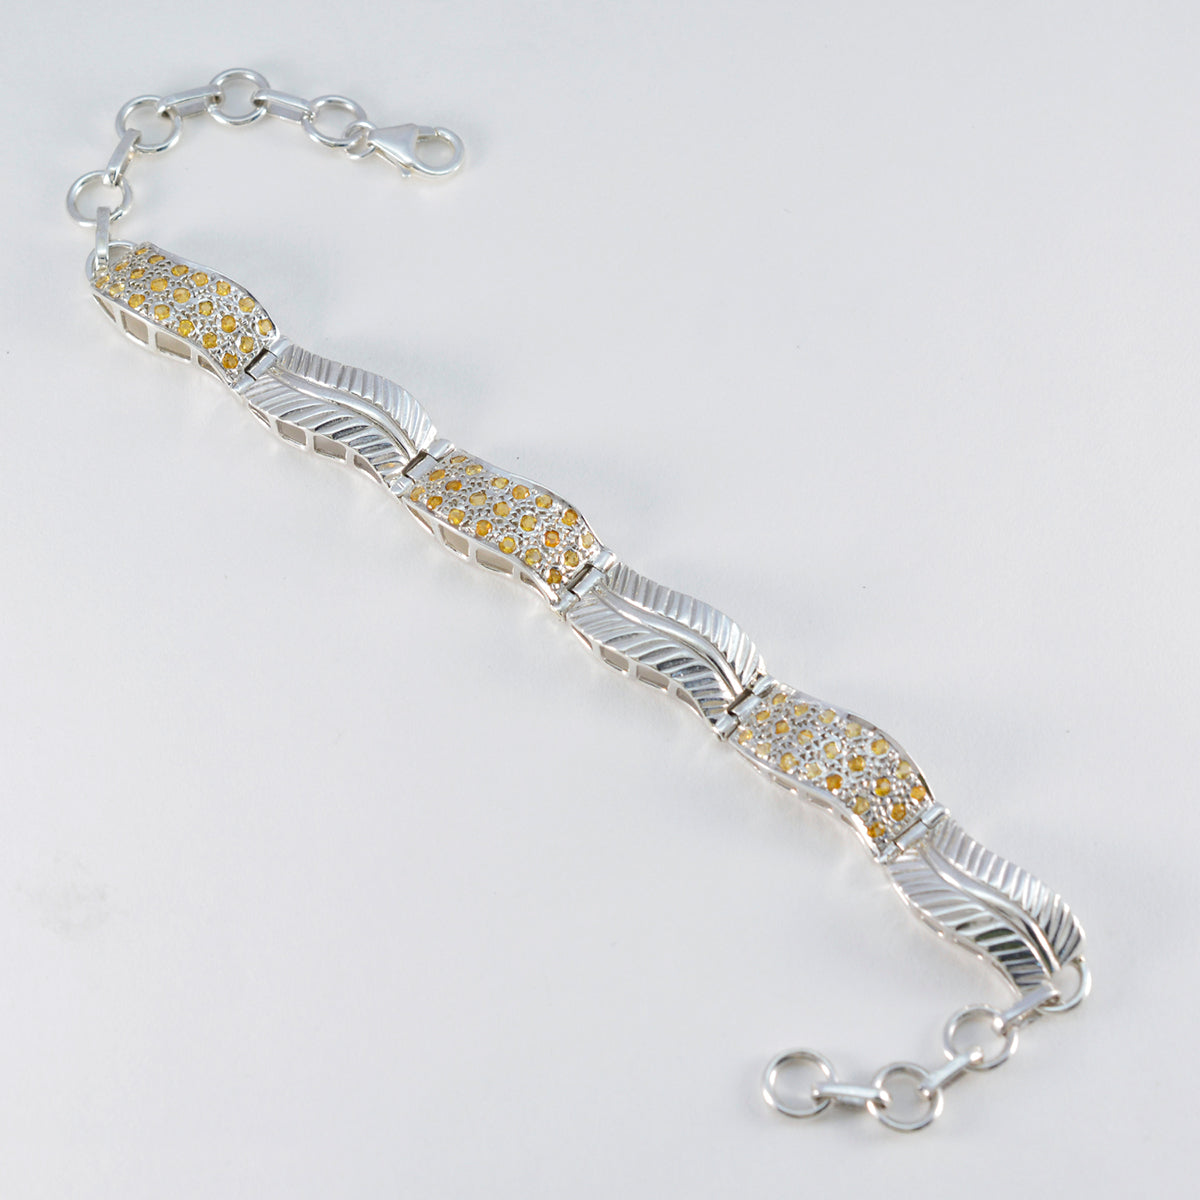 Riyo indien bracelet en argent sterling 925 pour femme bracelet citrine bracelet serti de lunette avec hameçon lien bracelet à breloques taille L 6-8,5 pouces.